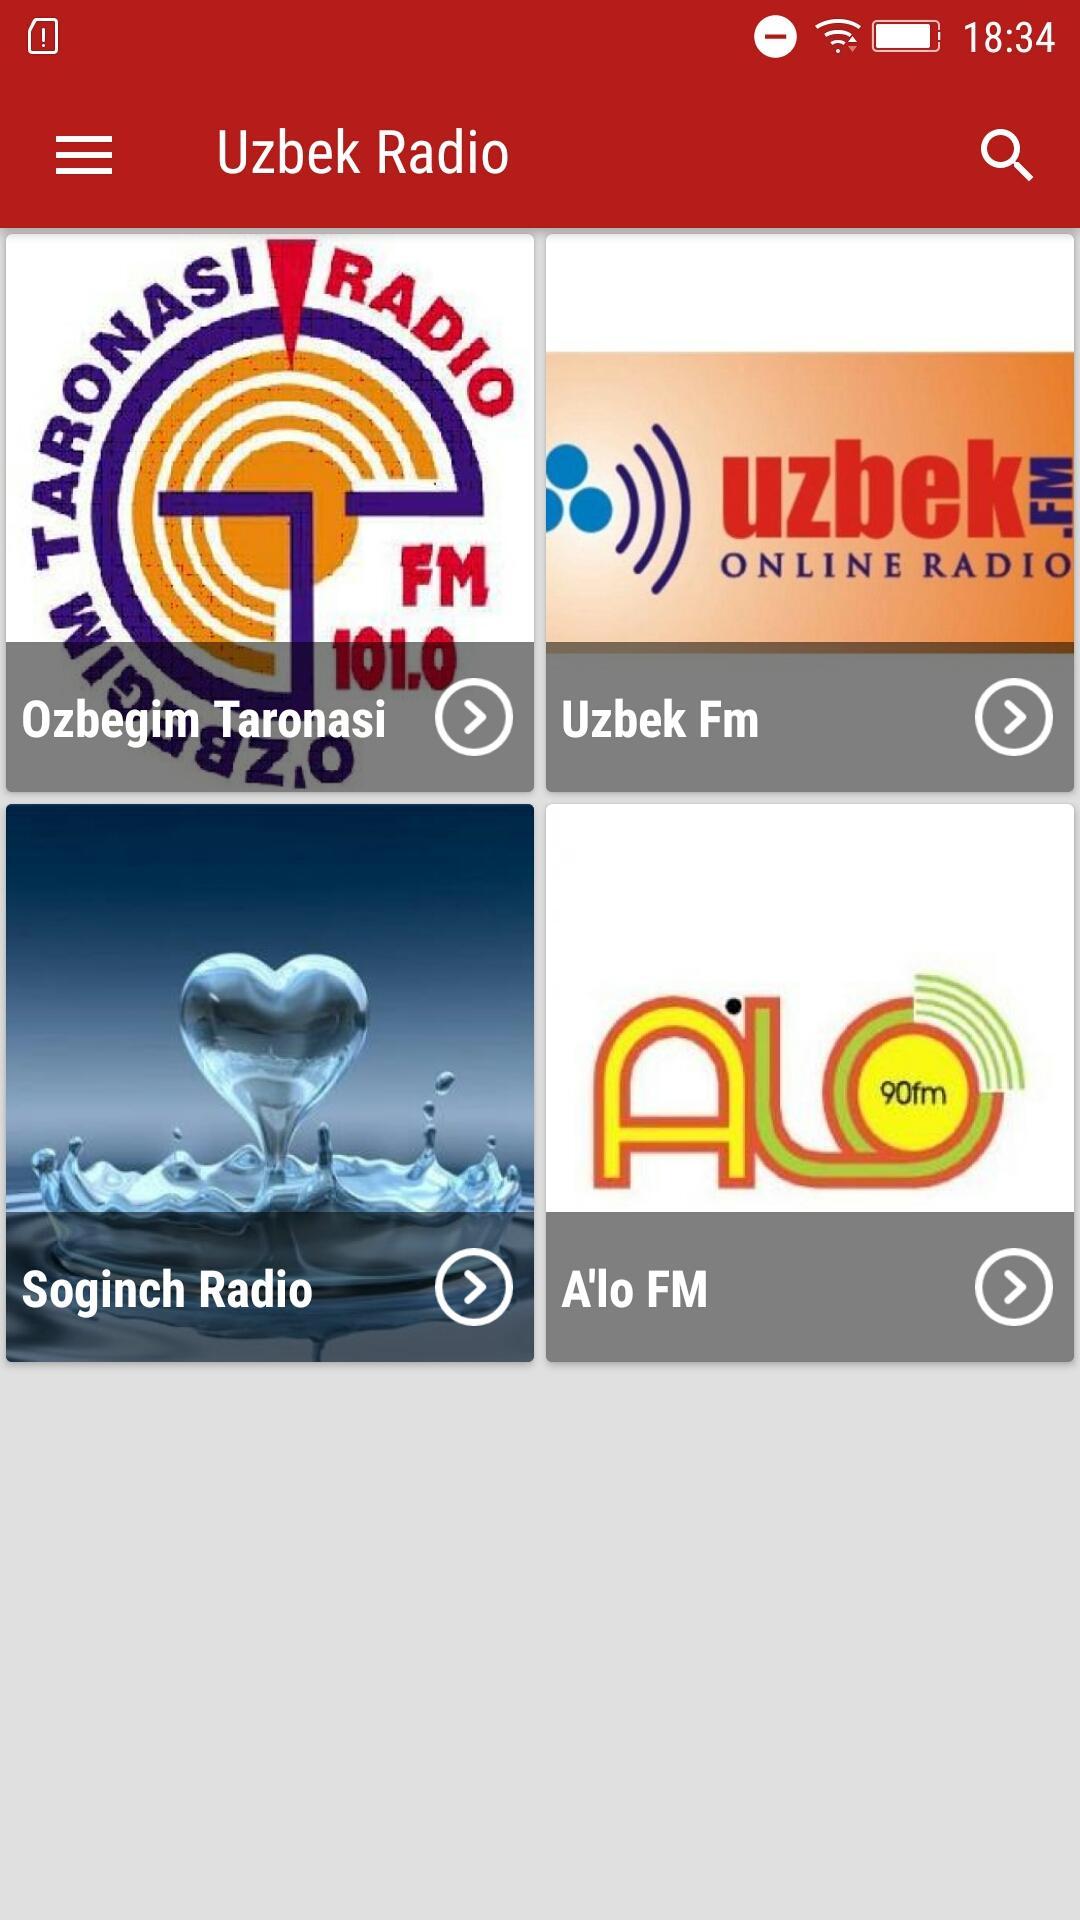 Узбекское радио. Узбек радио. Радио uz. Радио Узбекистана. Радиостанции Узбекистана.